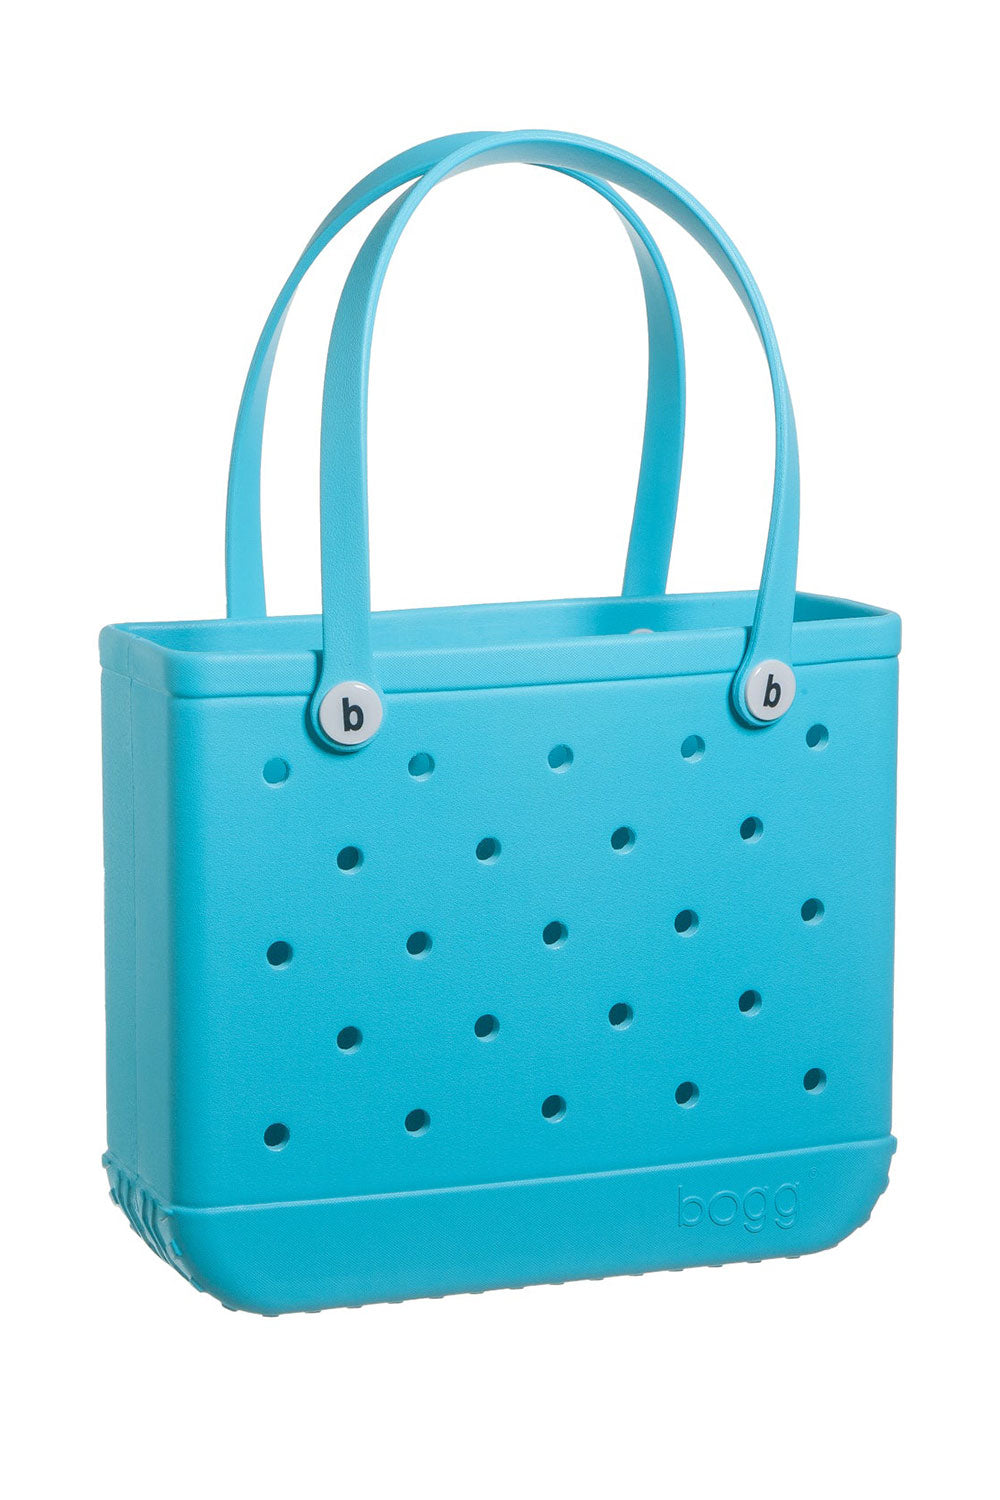 Bogg Bags Small Baby Bogg Bag in Tiffany Blue 160BTIFFANYBLUE Glik's